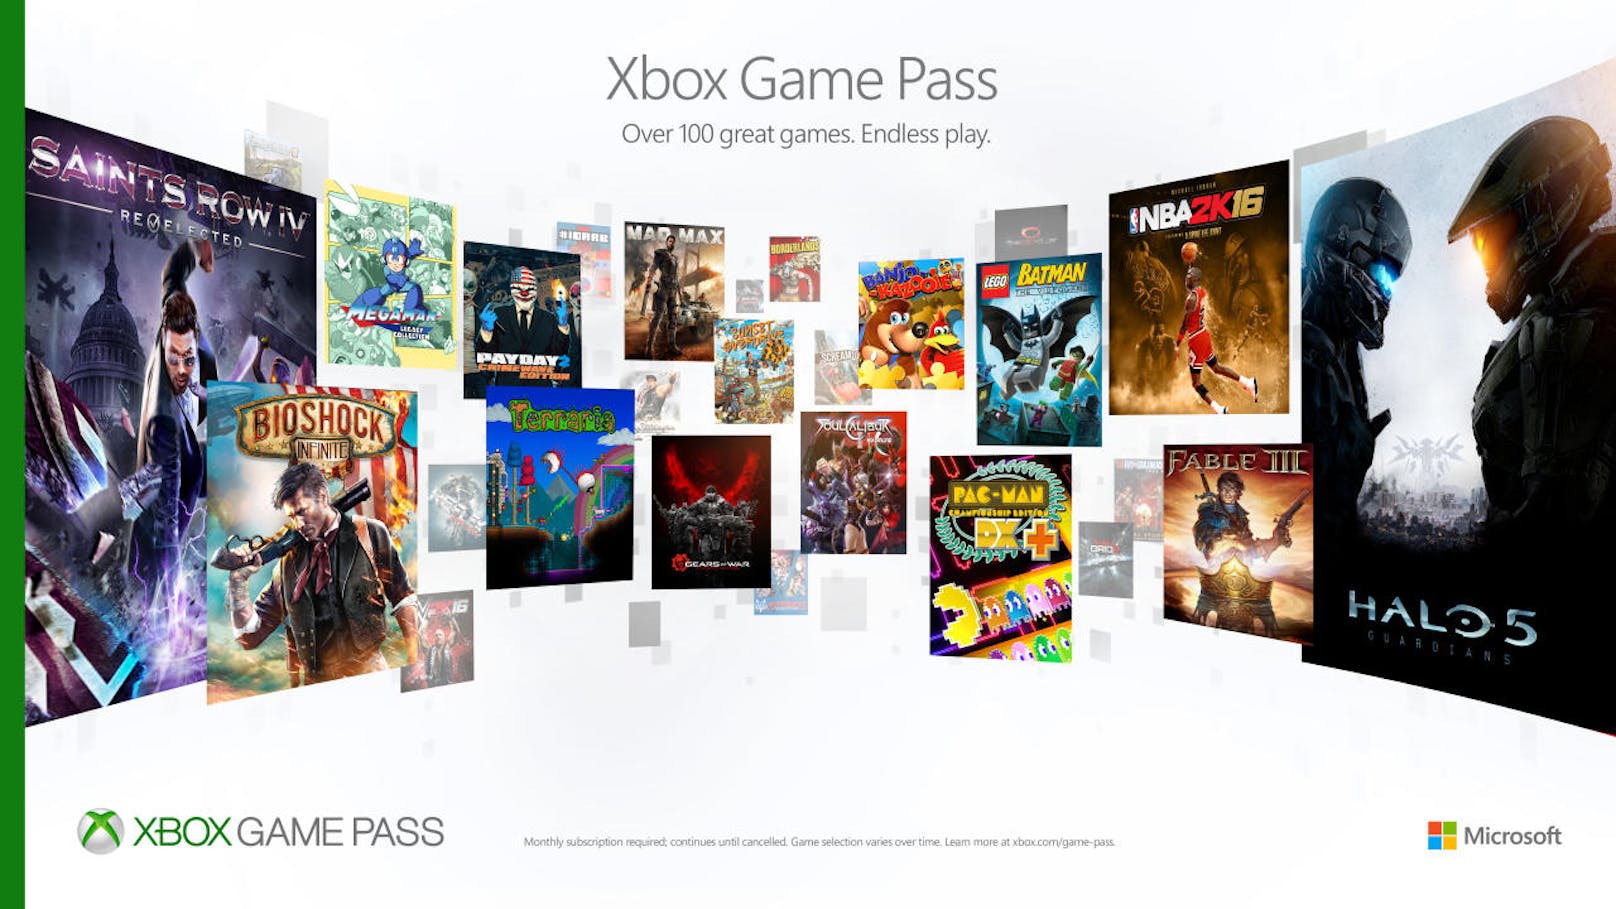 <b>13. Februar 2018:</b> Xbox rüstet den Game Pass auf. Künftig bekommt man Zugang zu allen neuen und exklusiven Veröffentlichungen der Microsoft Studios. Als erster Titel steht Sea of Thieves zum Release am 20. März in der Xbox Game Pass-Spielebibliothek zur Verfügung. Auch Titel wie Crackdown 3 und State of Decay 2 spielt man pünktlich zum Release mit der Xbox Game Pass-Mitgliedschaft. Ebenfalls neu: Ab dem 20. März erwerben Xbox Gamer eine sechsmonatige Mitgliedschaft für den Xbox Game Pass bei ausgewählten Retailern zu einem Preis von 59,99 Euro. Bisher war der Zugang zum Programm nur digital möglich.